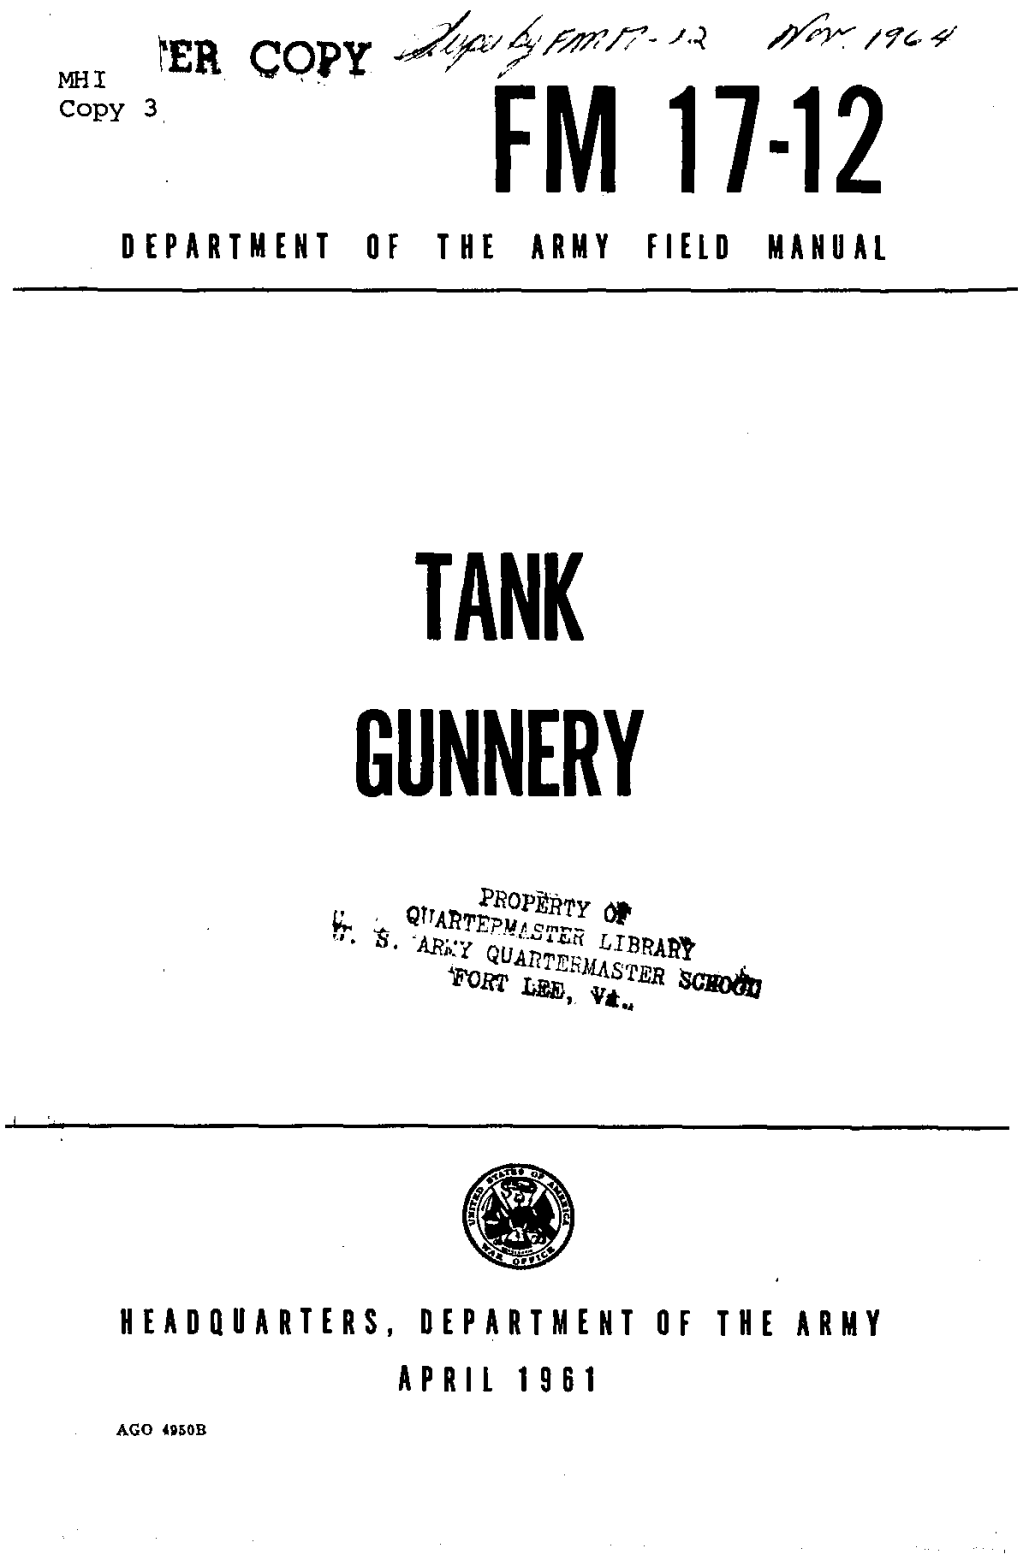 Tank Gunnery